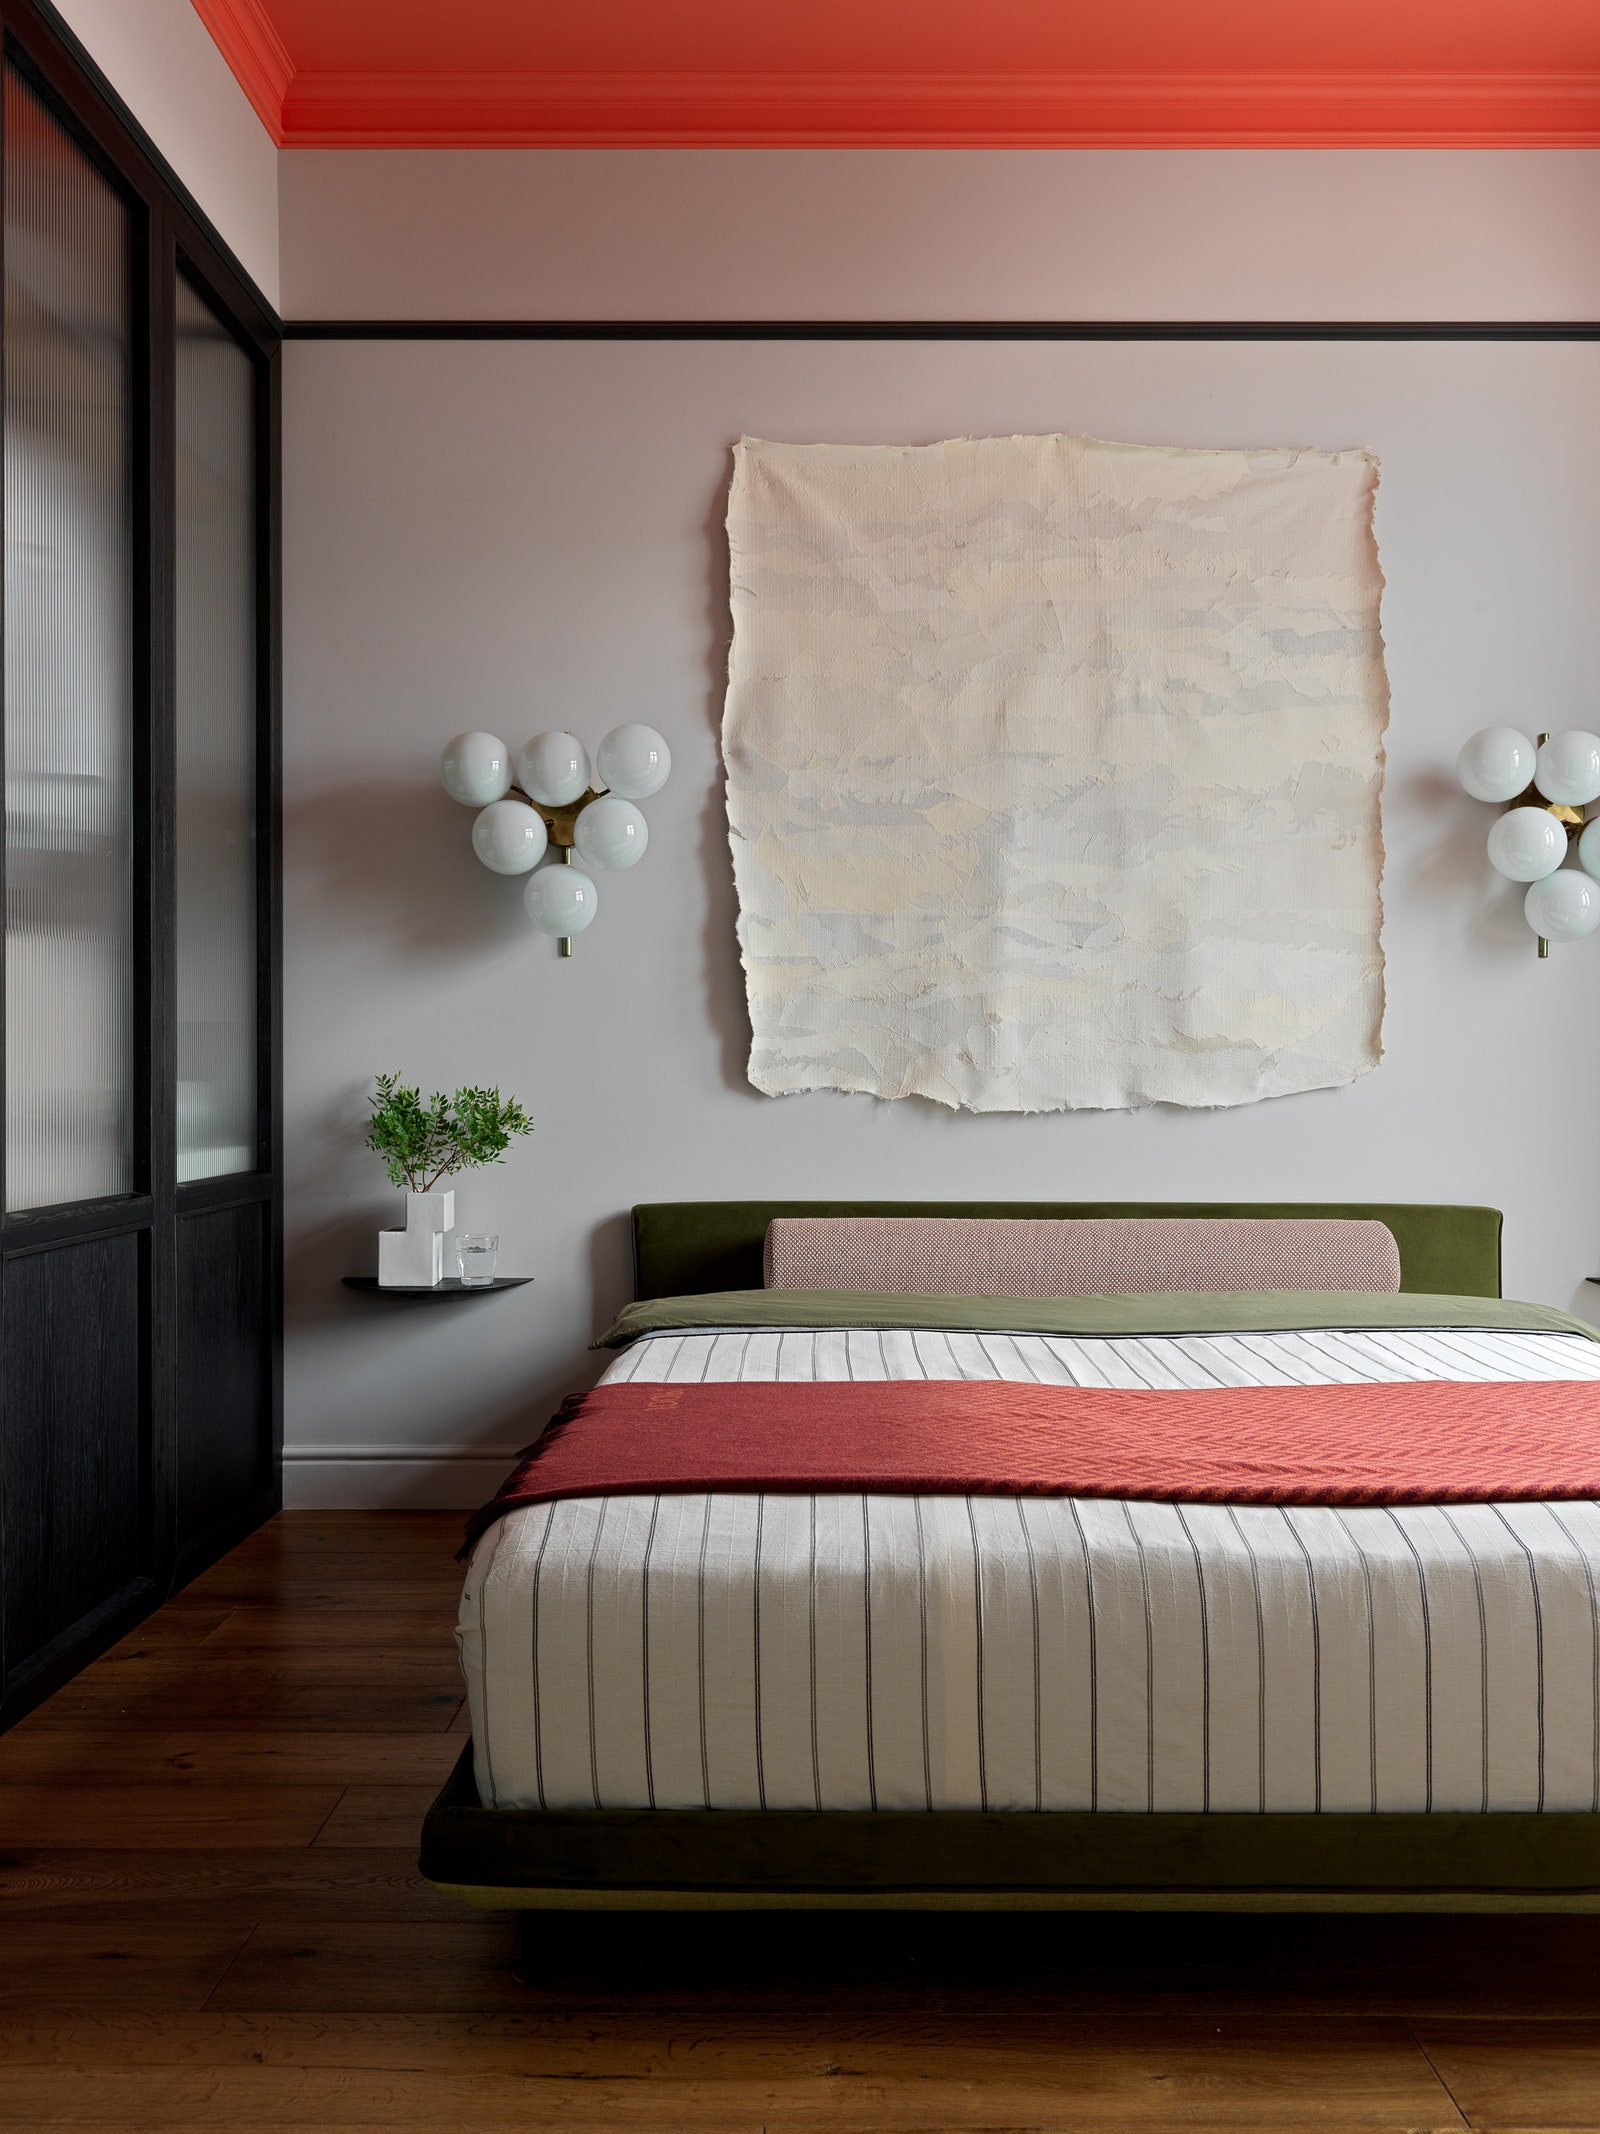 Спальня. Кровать сделана на заказ по эскизам дизайнера советские винтажные бра прикроватные полки Menu на стене работа...